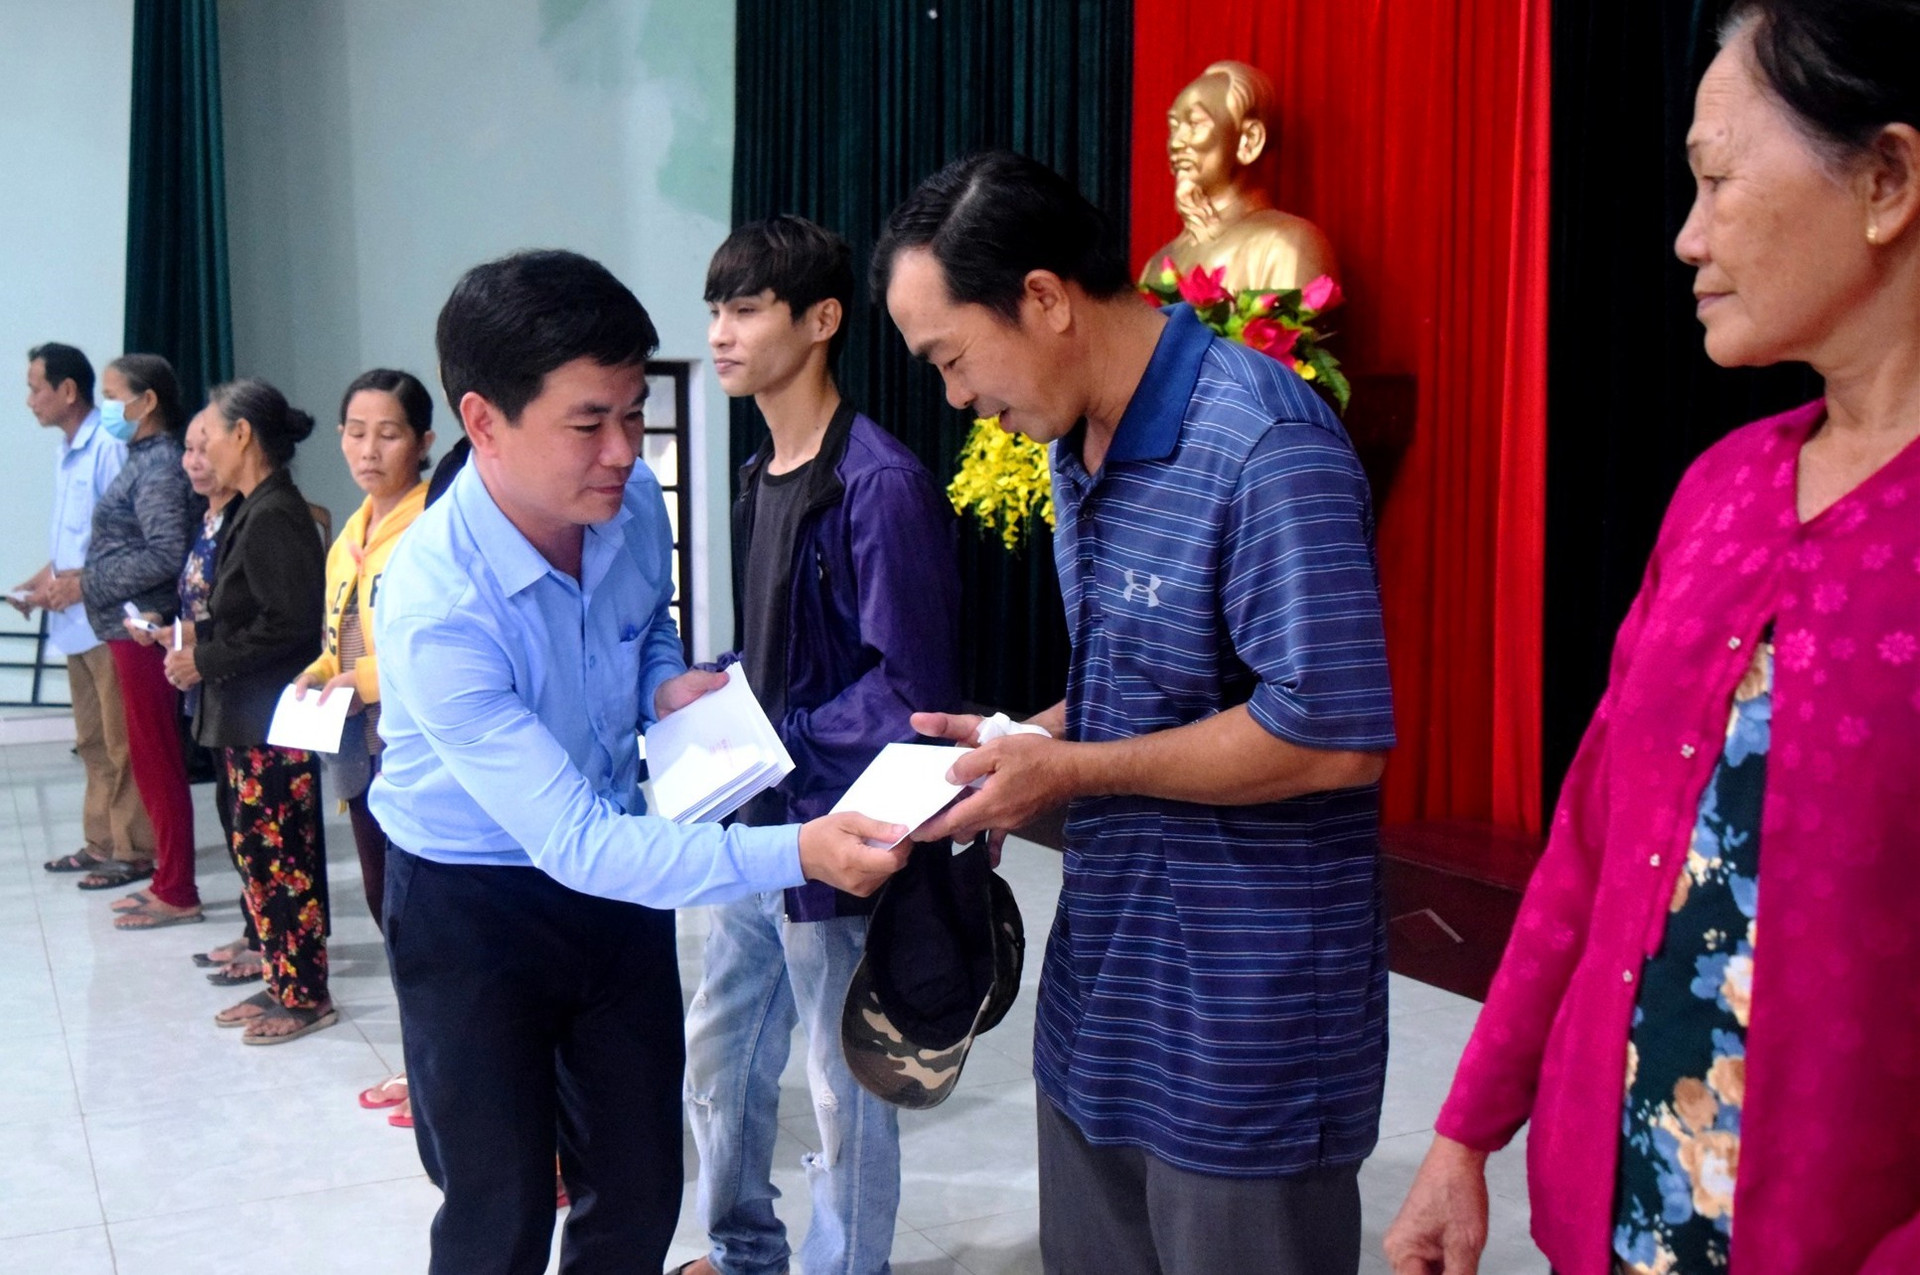 Đồng chí Lê Quang Quỳnh – Phó Bí thư Tỉnh đoàn trao quà hỗ trợ cho nhân dân bị ảnh hưởng bởi lụt bão tại huyện Duy Xuyên. Ảnh: THÁI CƯỜNG